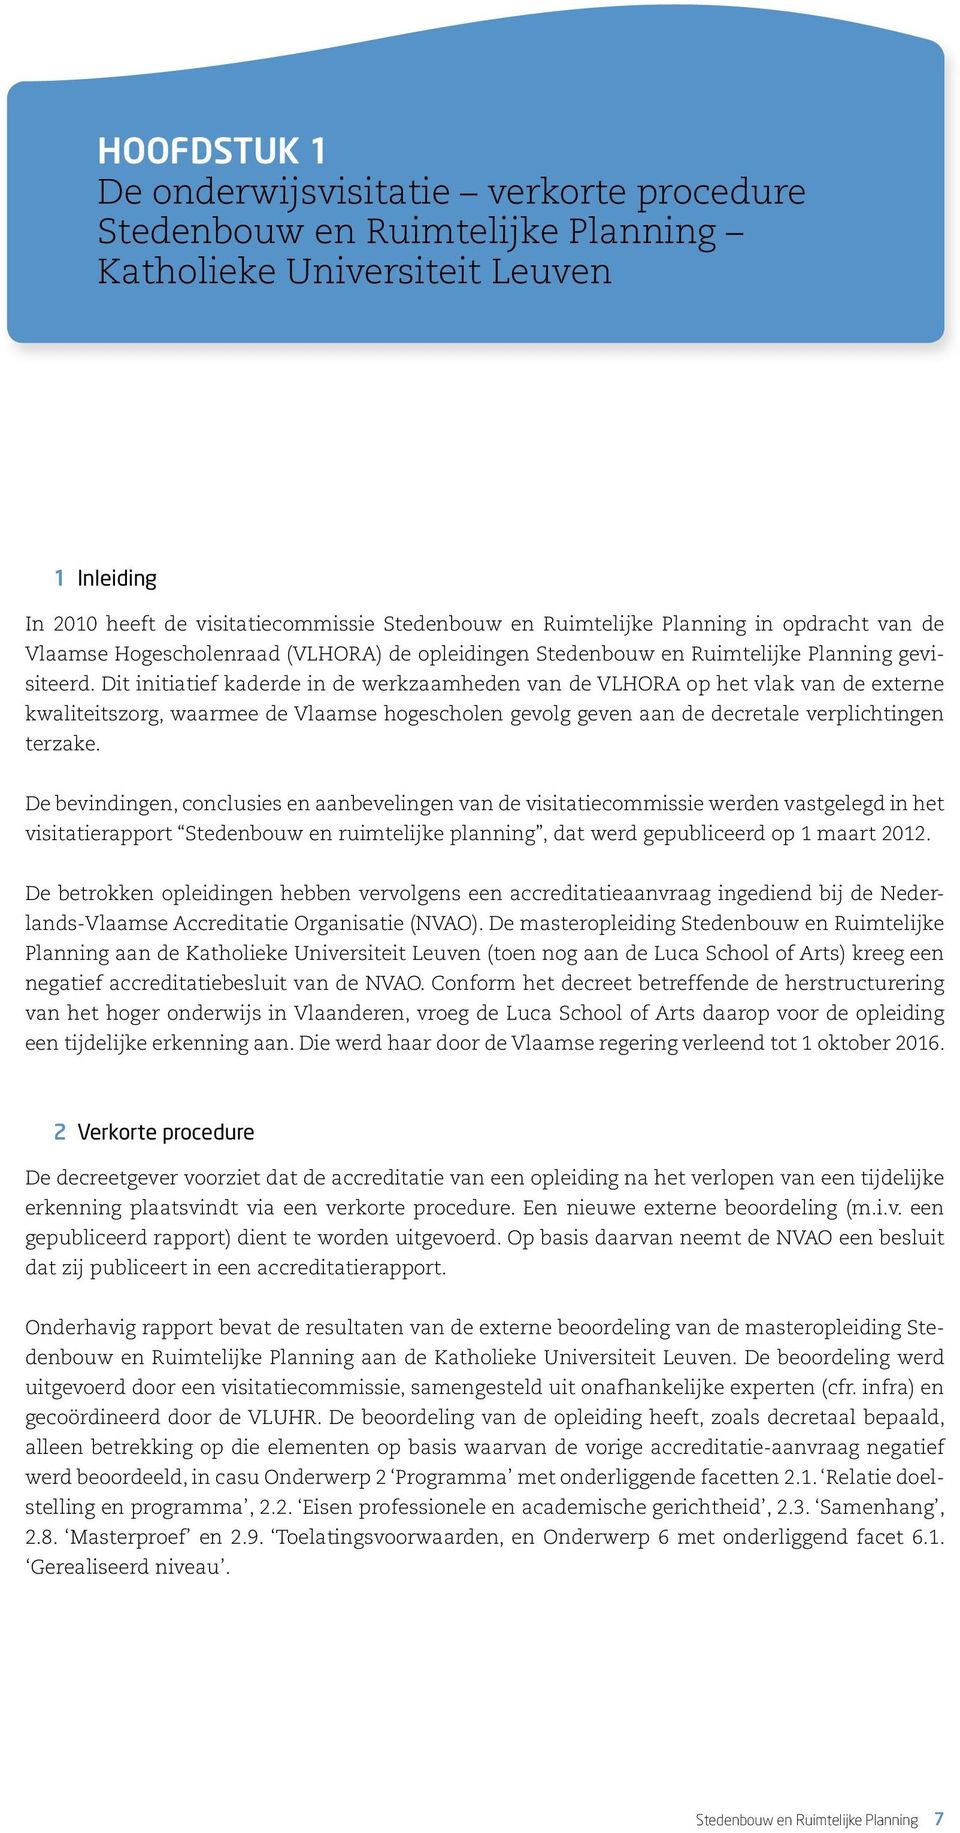 Dit initiatief kaderde in de werkzaamheden van de VLHORA op het vlak van de externe kwaliteitszorg, waarmee de Vlaamse hogescholen gevolg geven aan de decretale verplichtingen terzake.